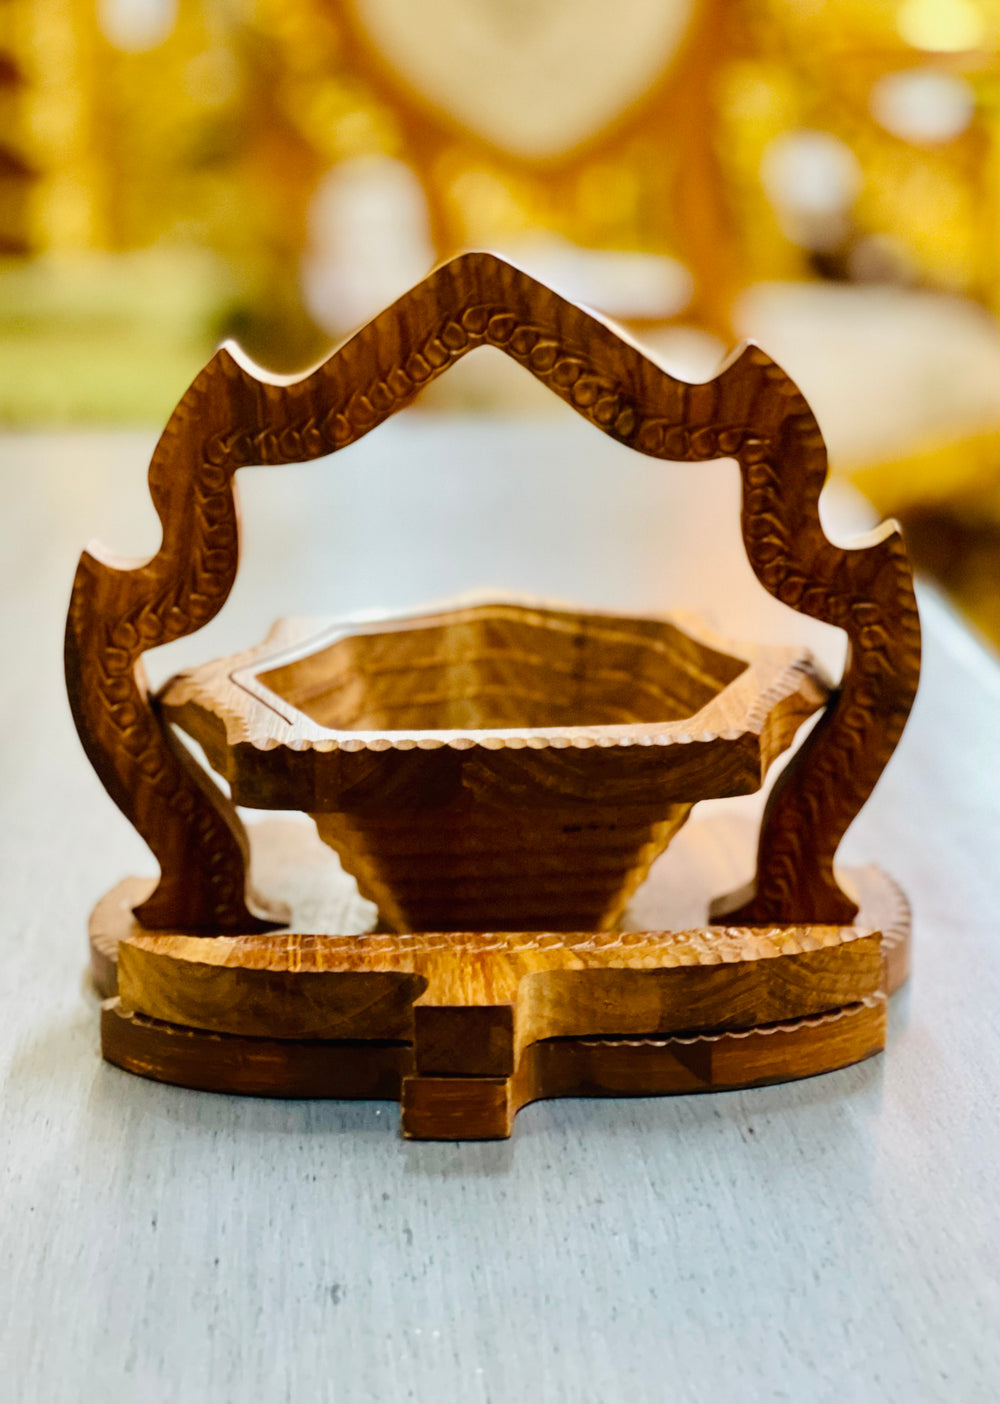 Handmade 8”, wooden, collapsible Leaf shaped basket with handle.  /  fruit basket  /   Bread bowl  /   Hot plate  /    Trivet to basket  /